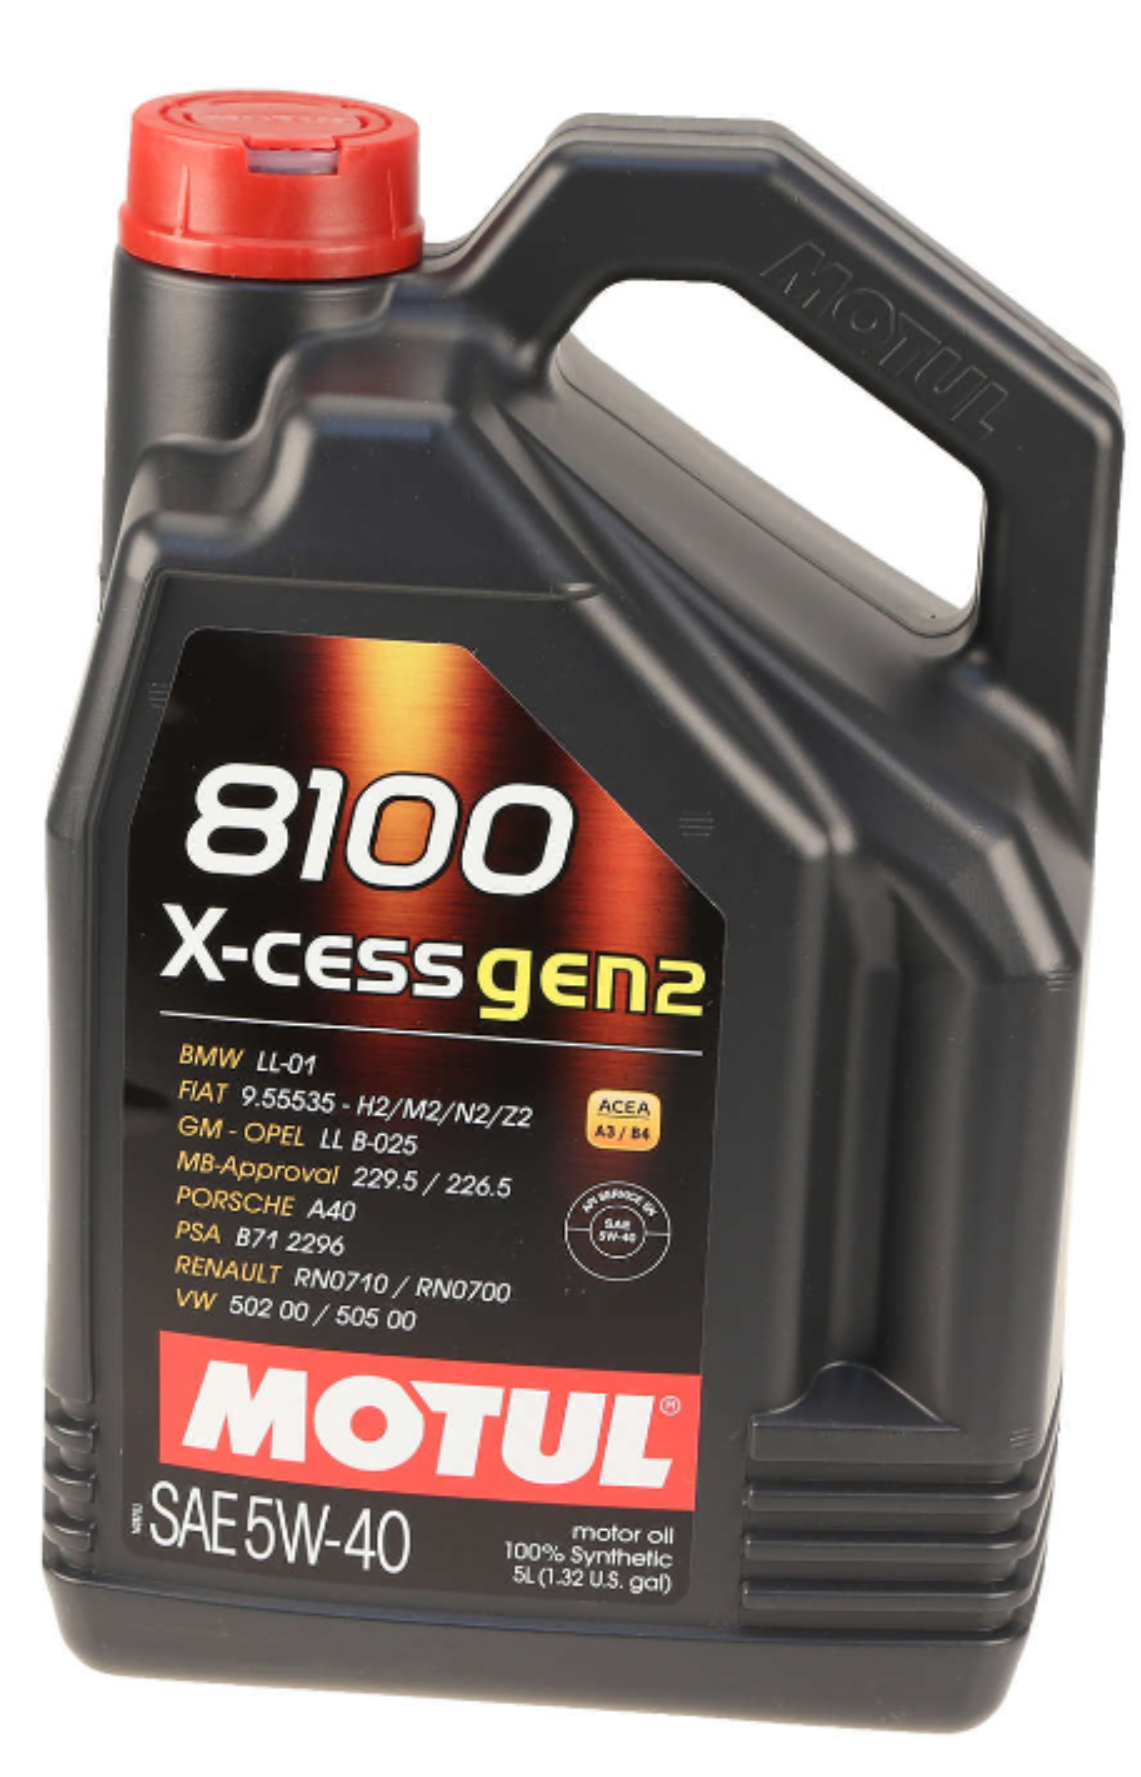 Motul 8100 X-CESS GEN2 Synthetic 5W-40 Motor Oil, 5 Liter